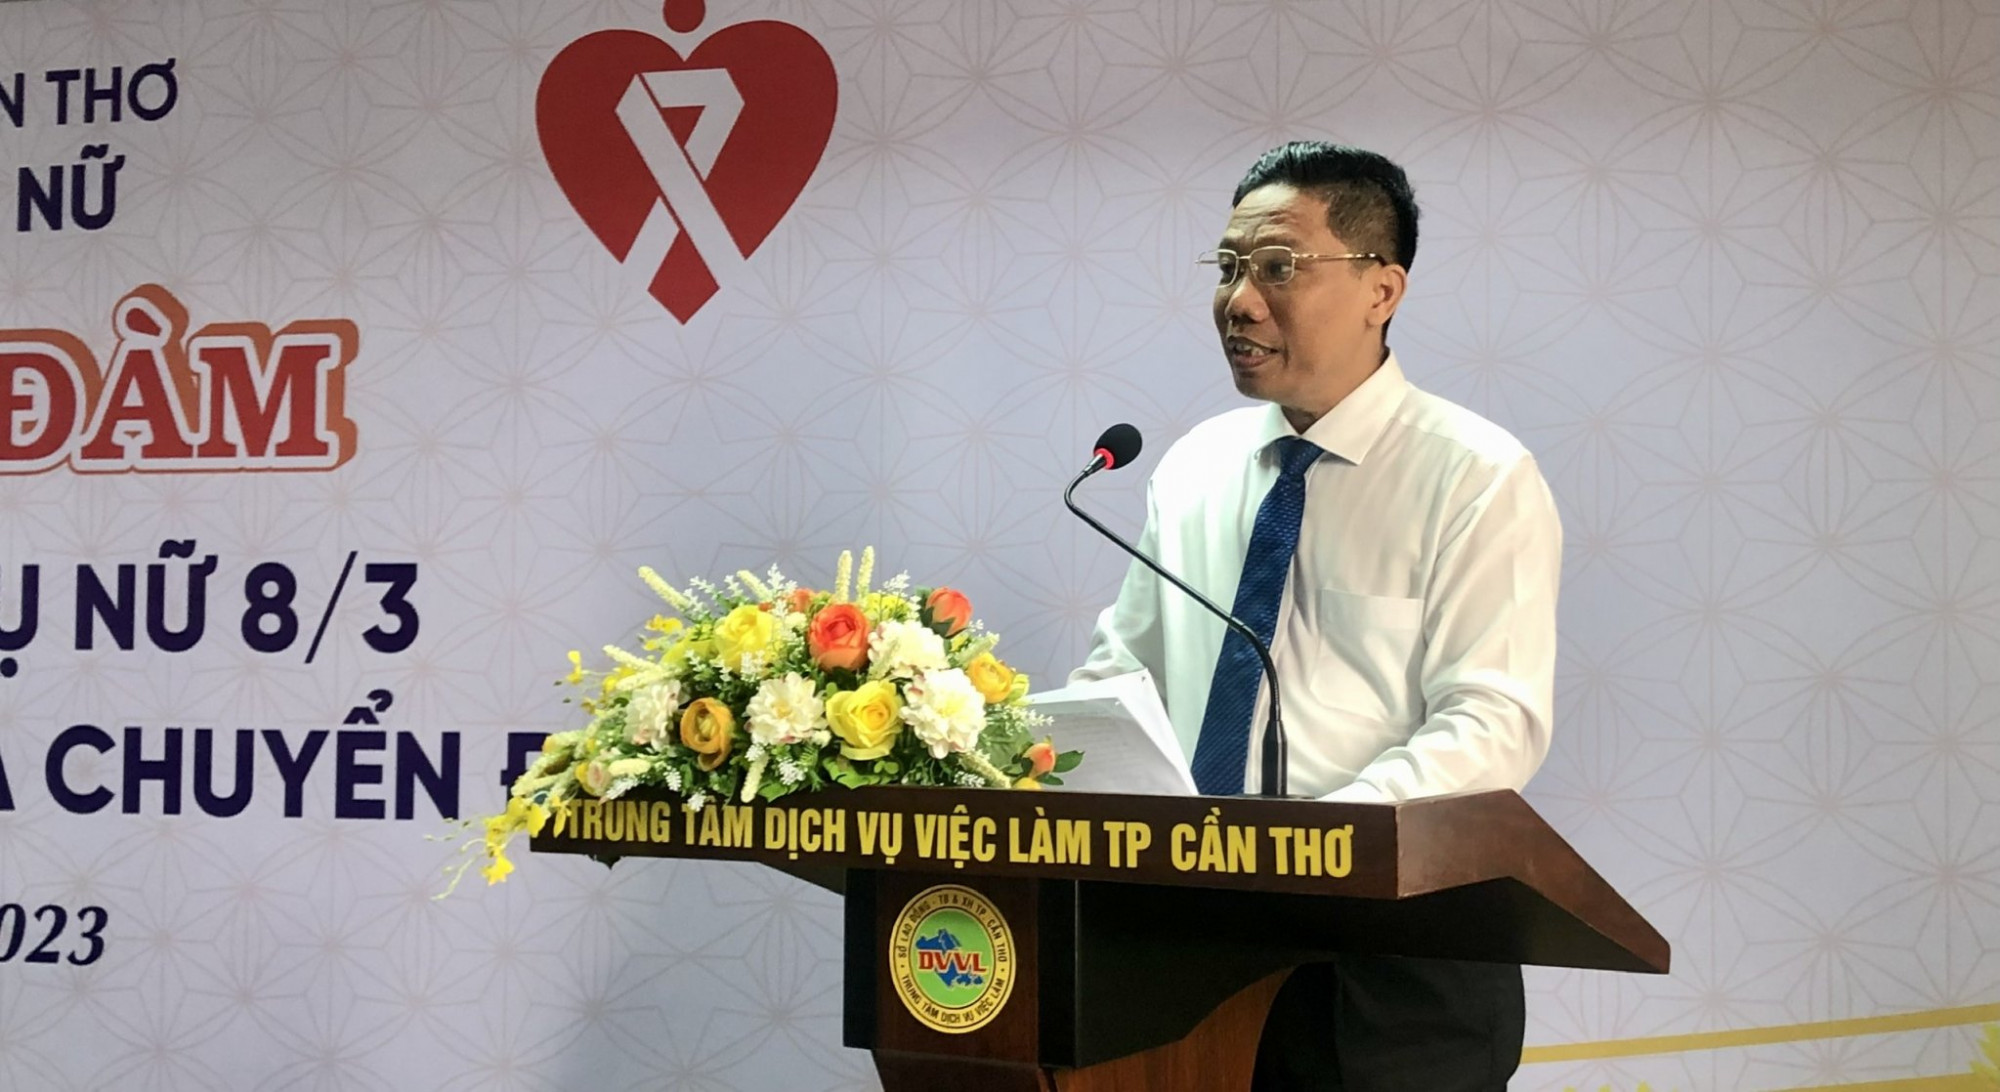 Ông Nguyễn Thực Hiện - Phó chủ tịch UBND TP Cần Thơ phát biểu tại buổi lễ 